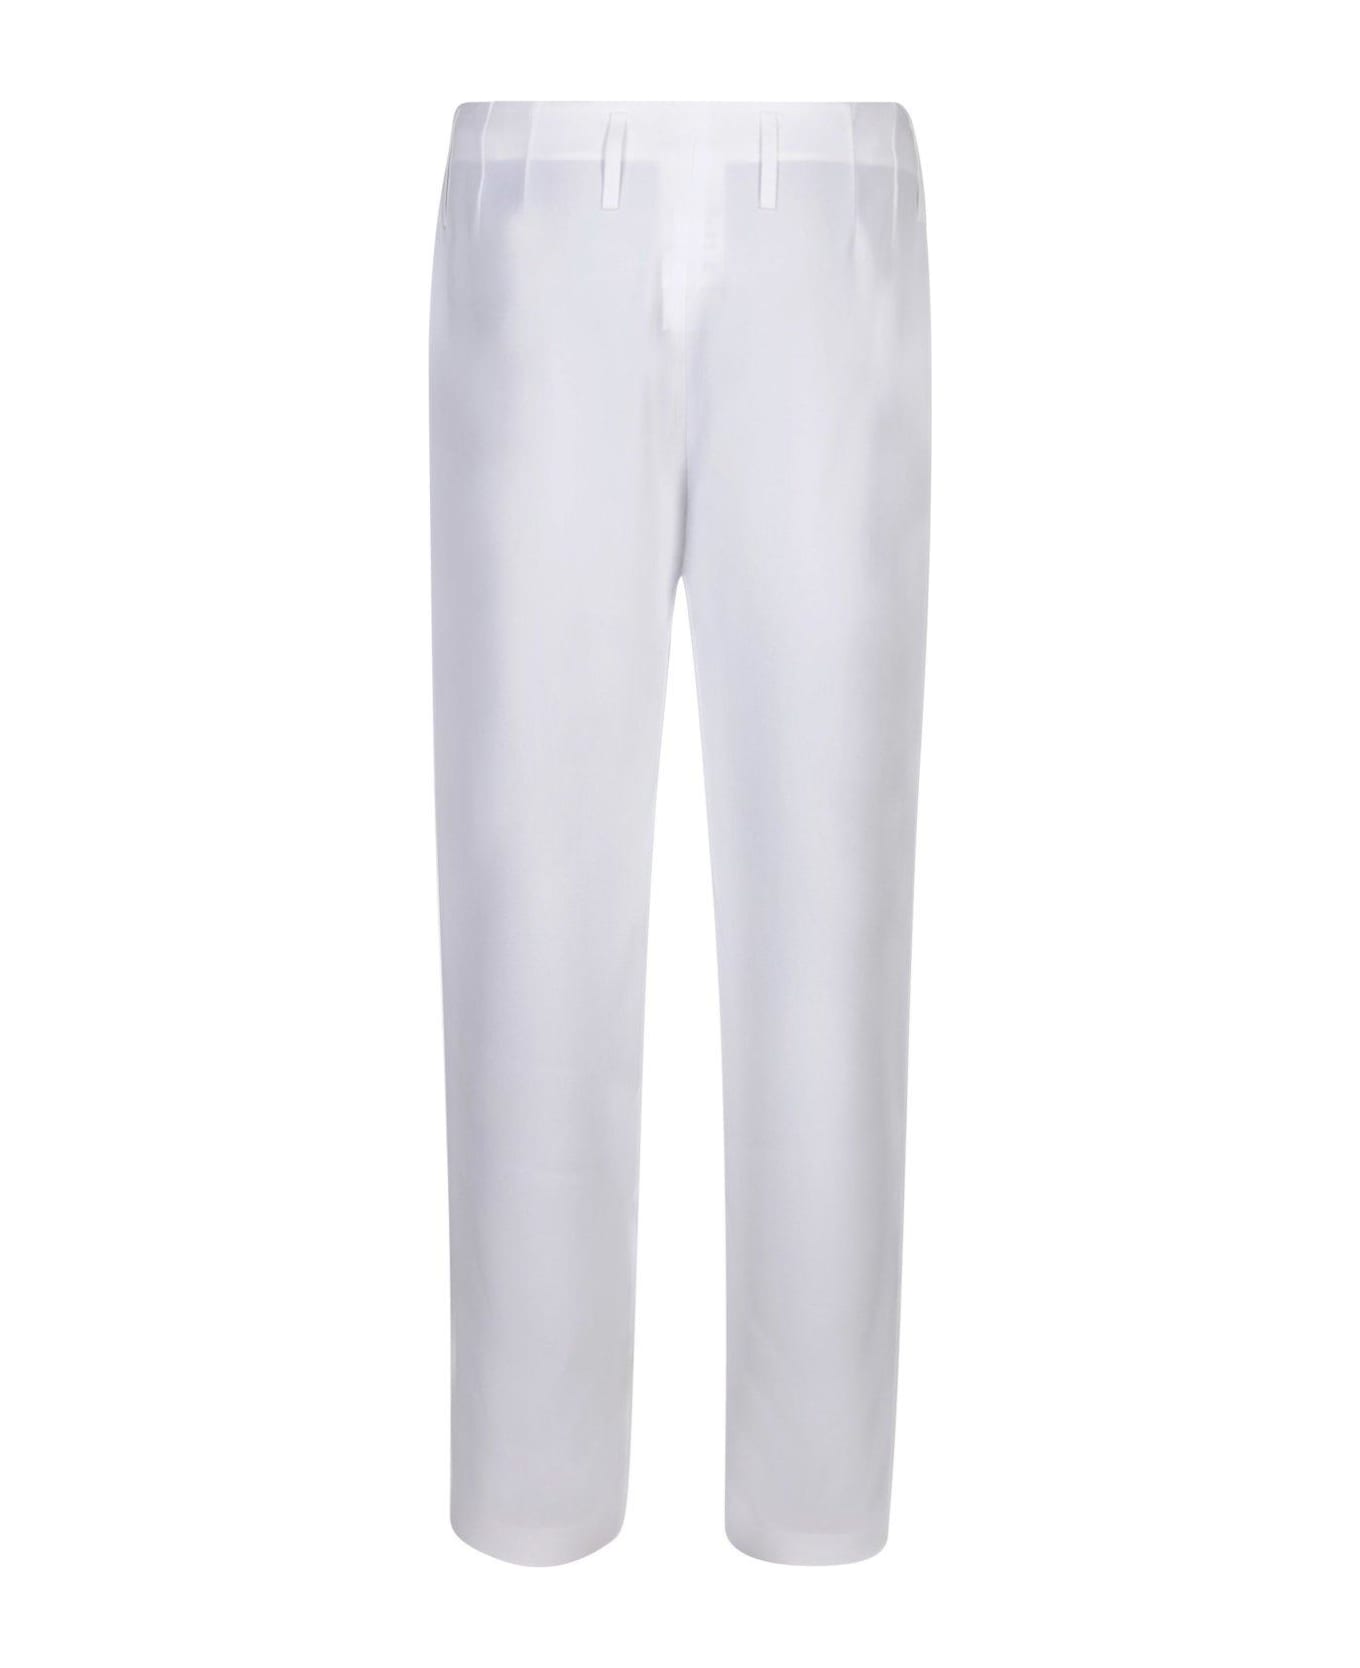 Giorgio Armani Straight Leg Pleated Trousers - Bianco